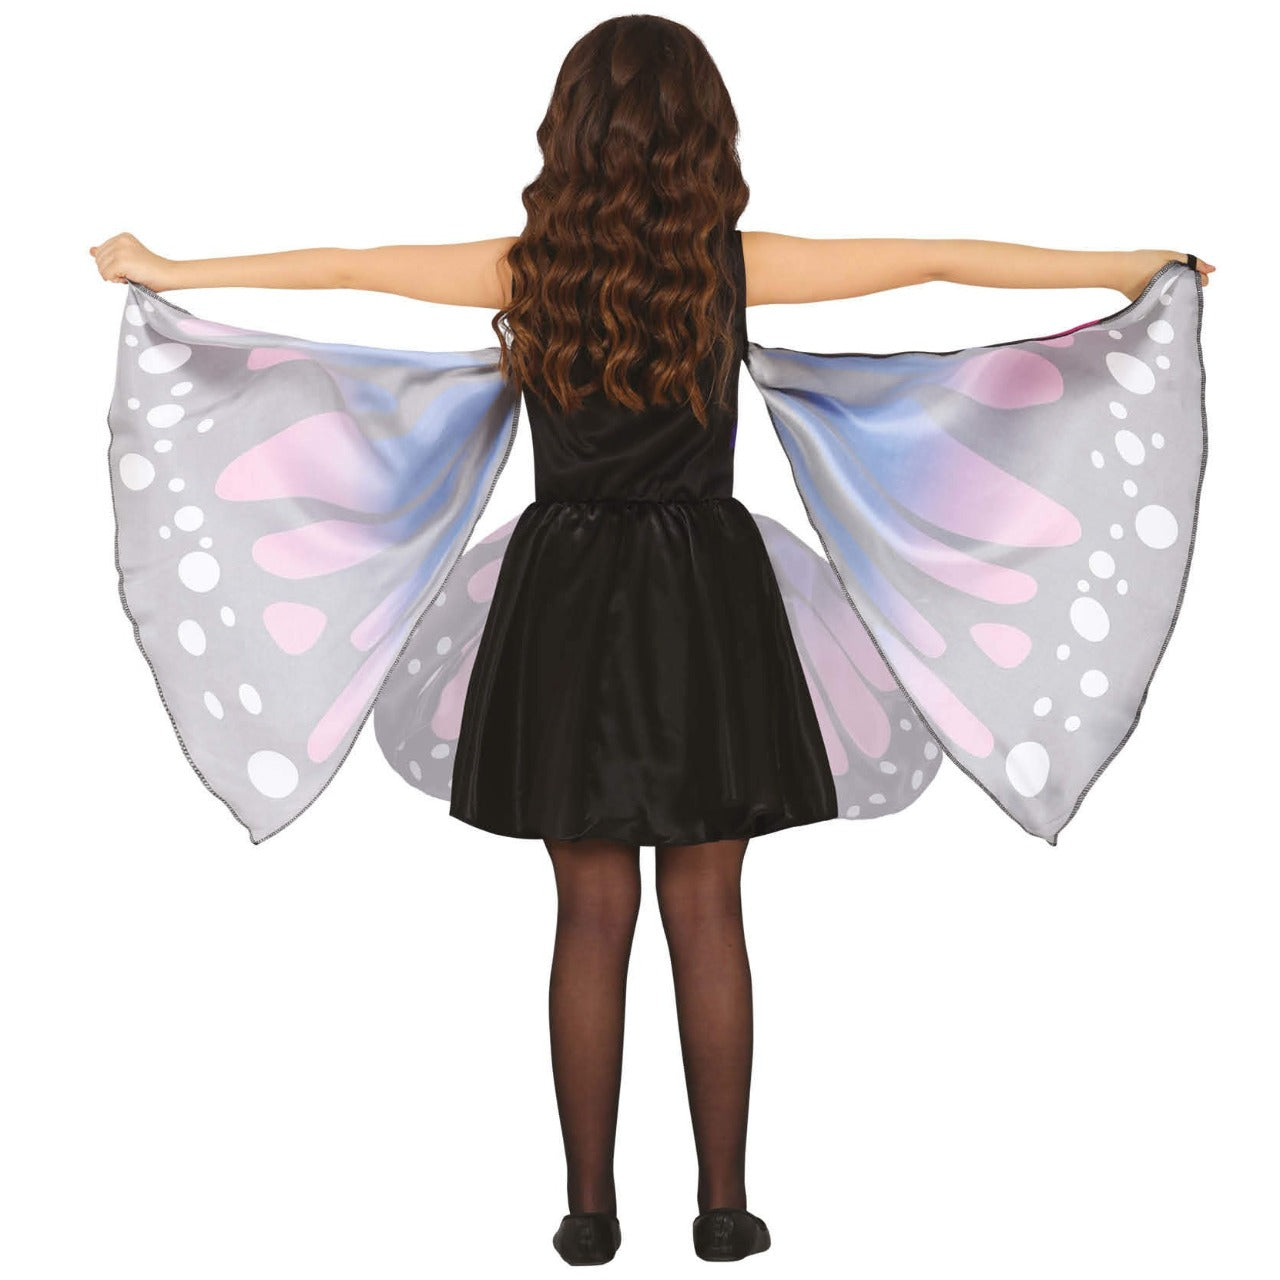 Acquista online costume da farfalla reale infantile